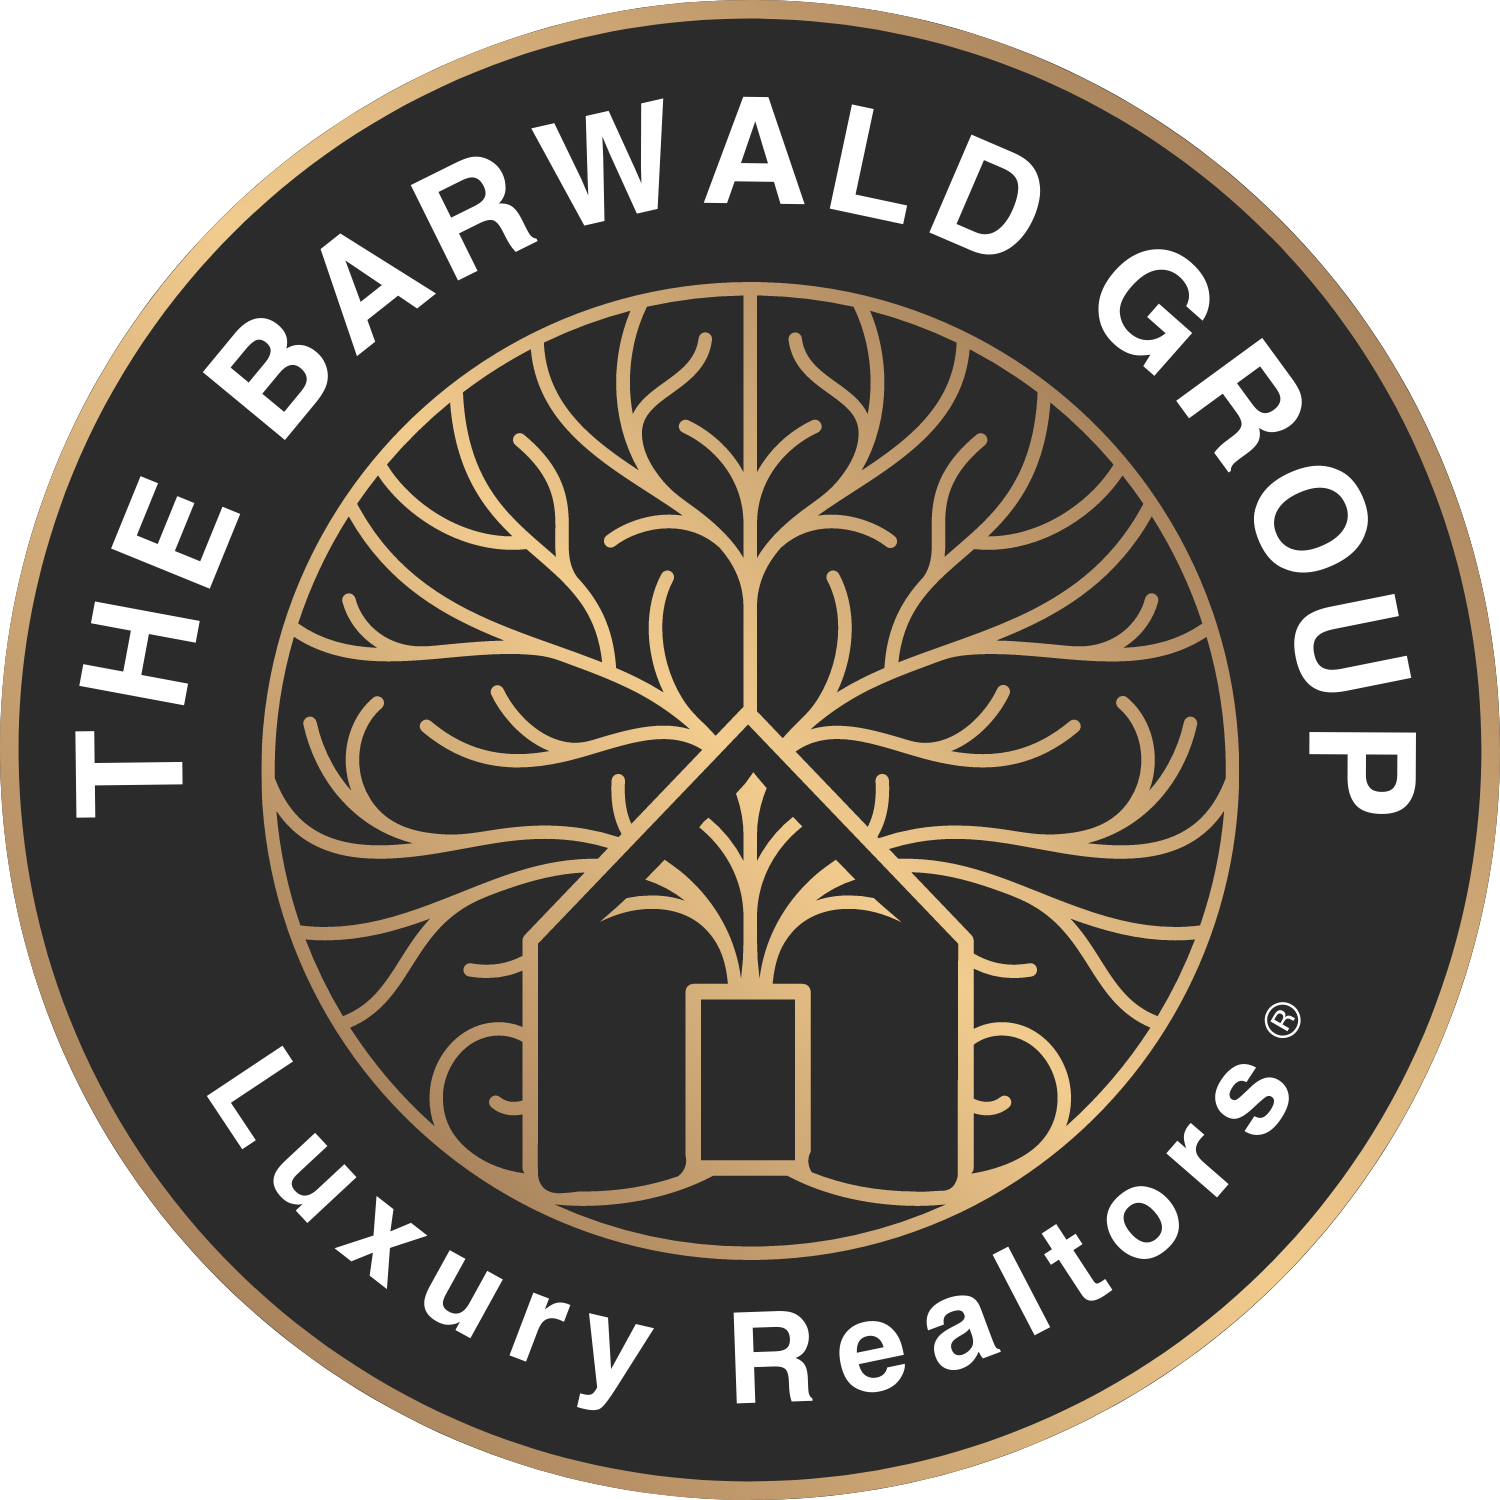 The Barwald Group Logo